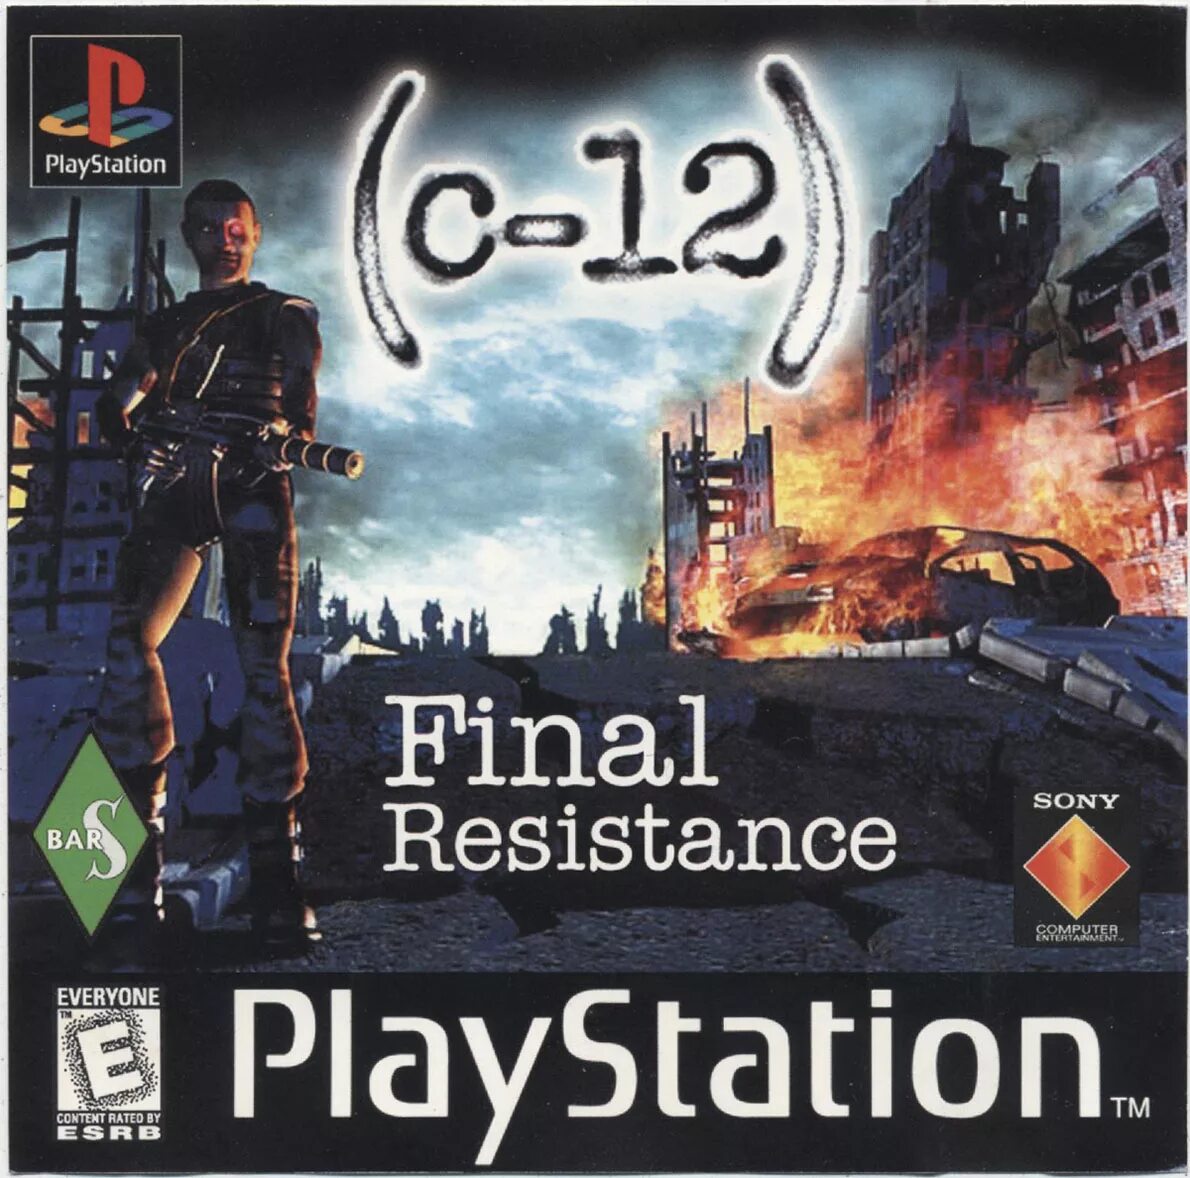 C-12 ps1. C-12 Final Resistance ps1. C-12 Final Resistance ps1 обложка. PLAYSTATION 1 c12 Final Resistance.